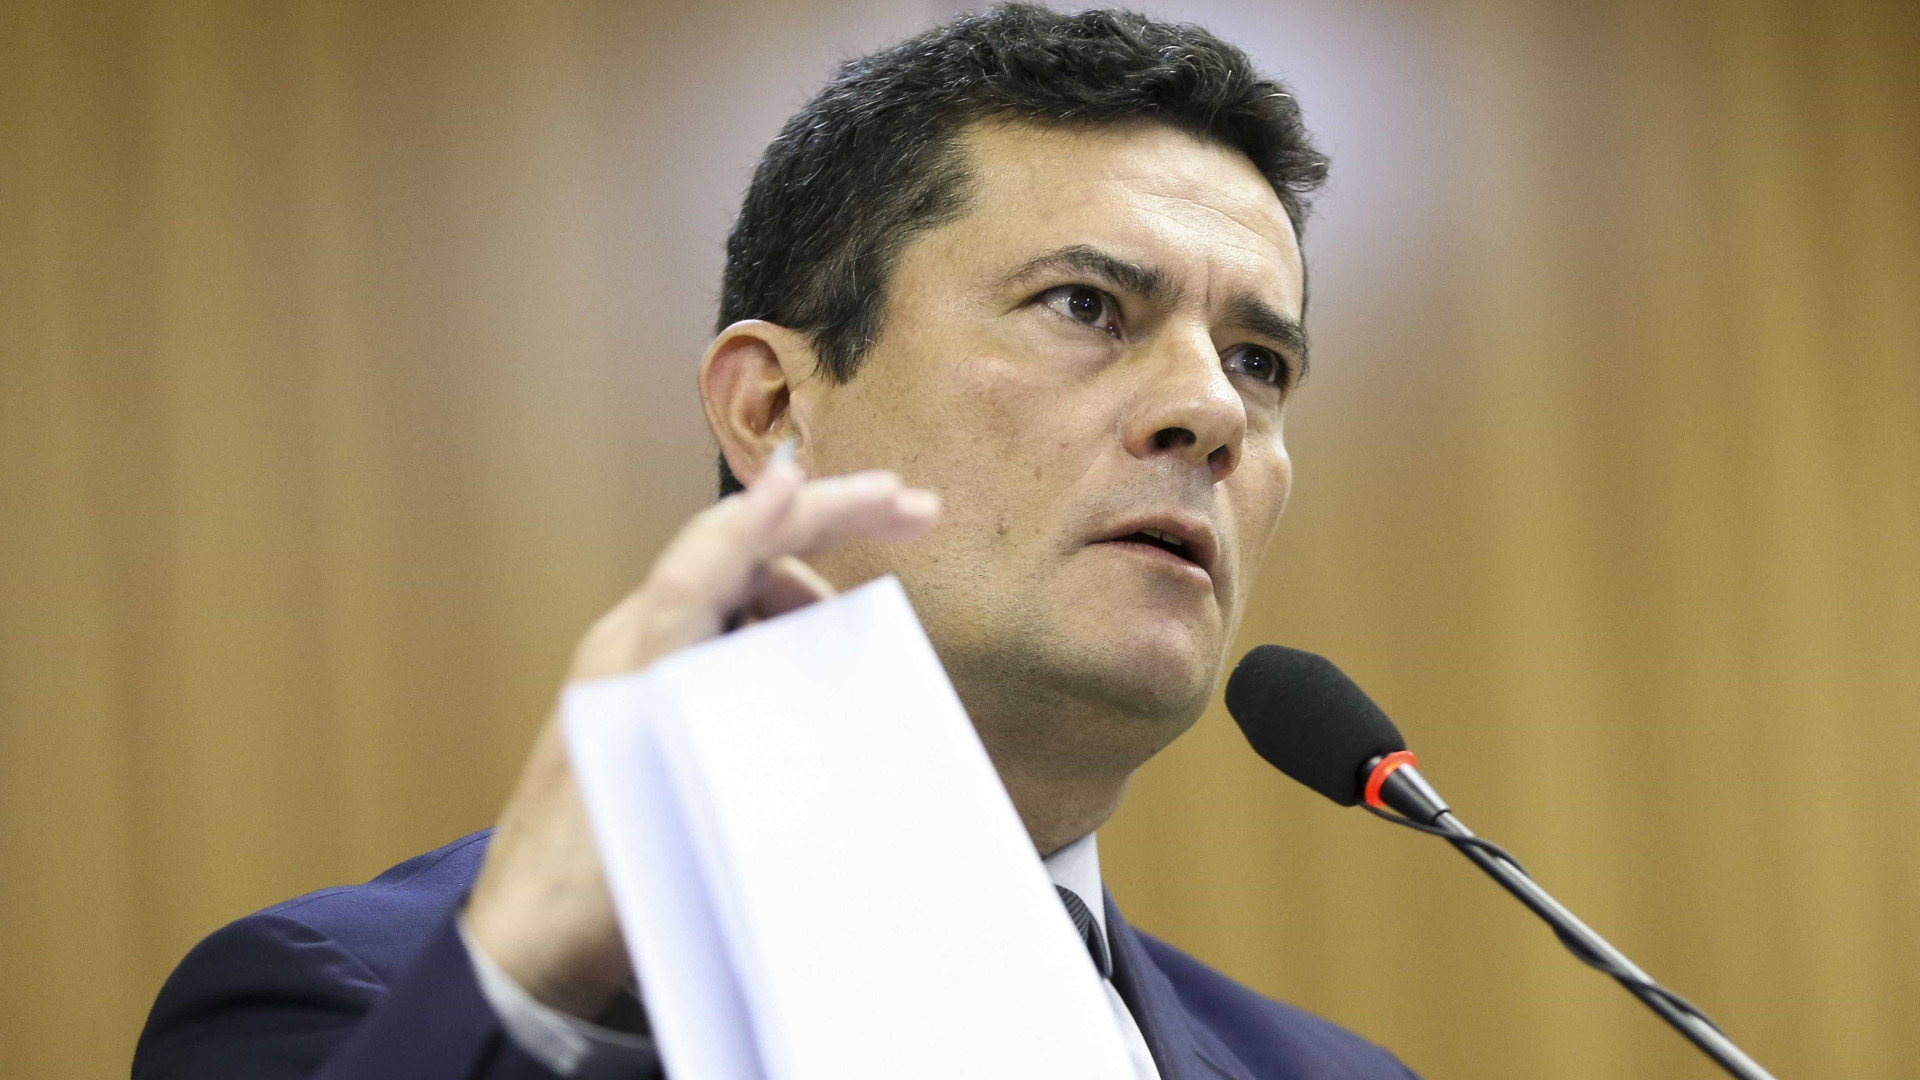 PT pede que investiguem motivo de Moro vazar inquérito a Bolsonaro